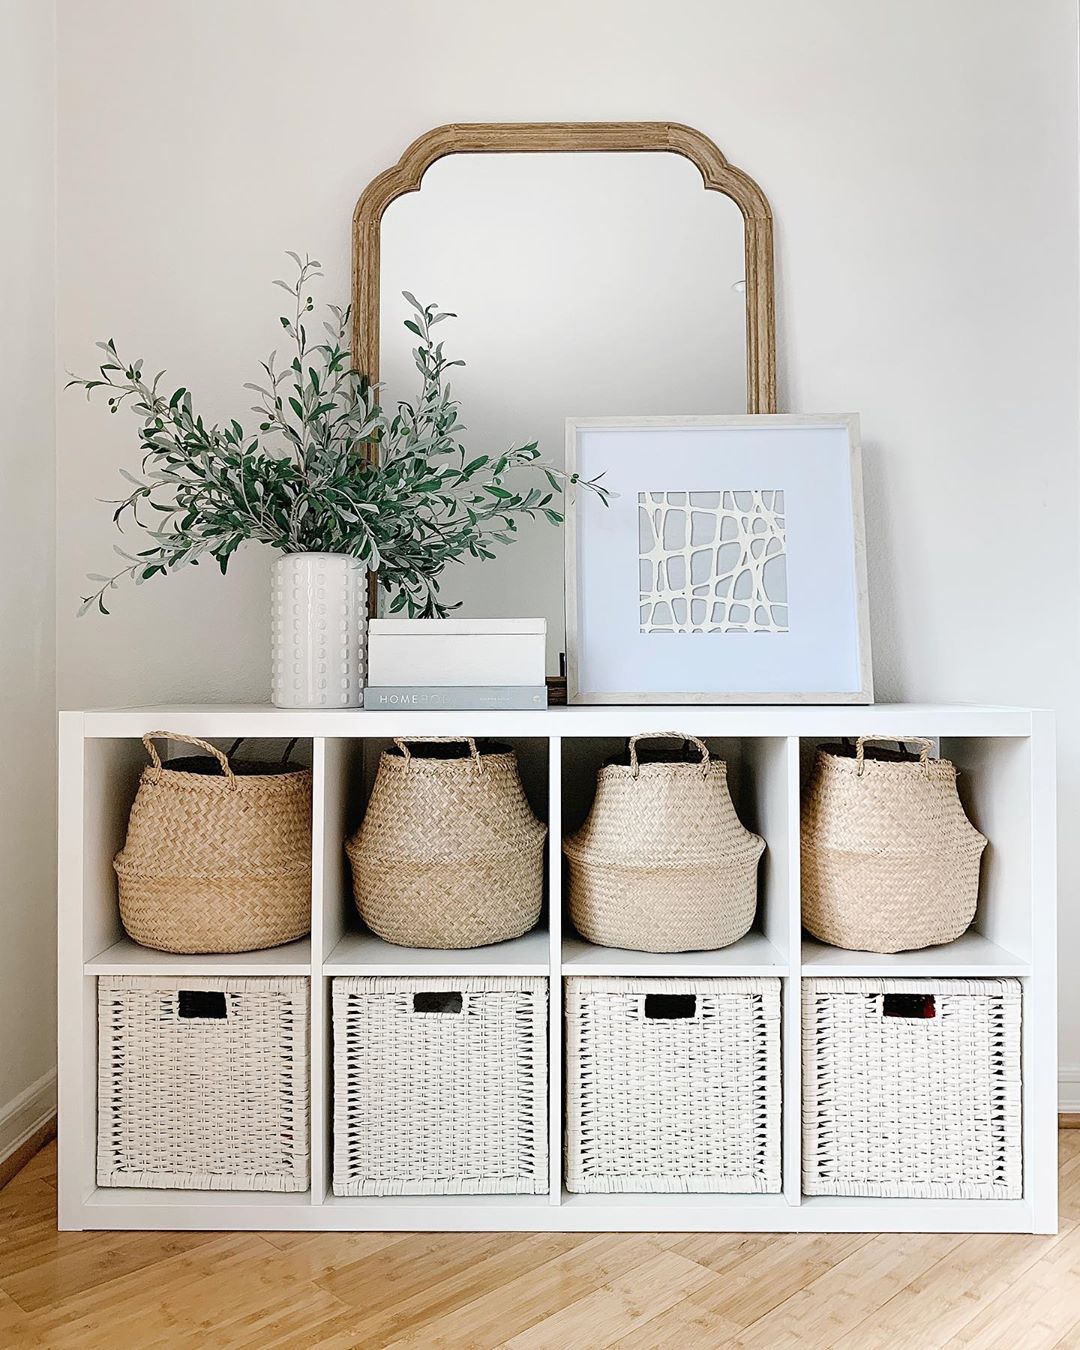 Wicker baskets on white shelf. Photo by Instagram use @simplyciani